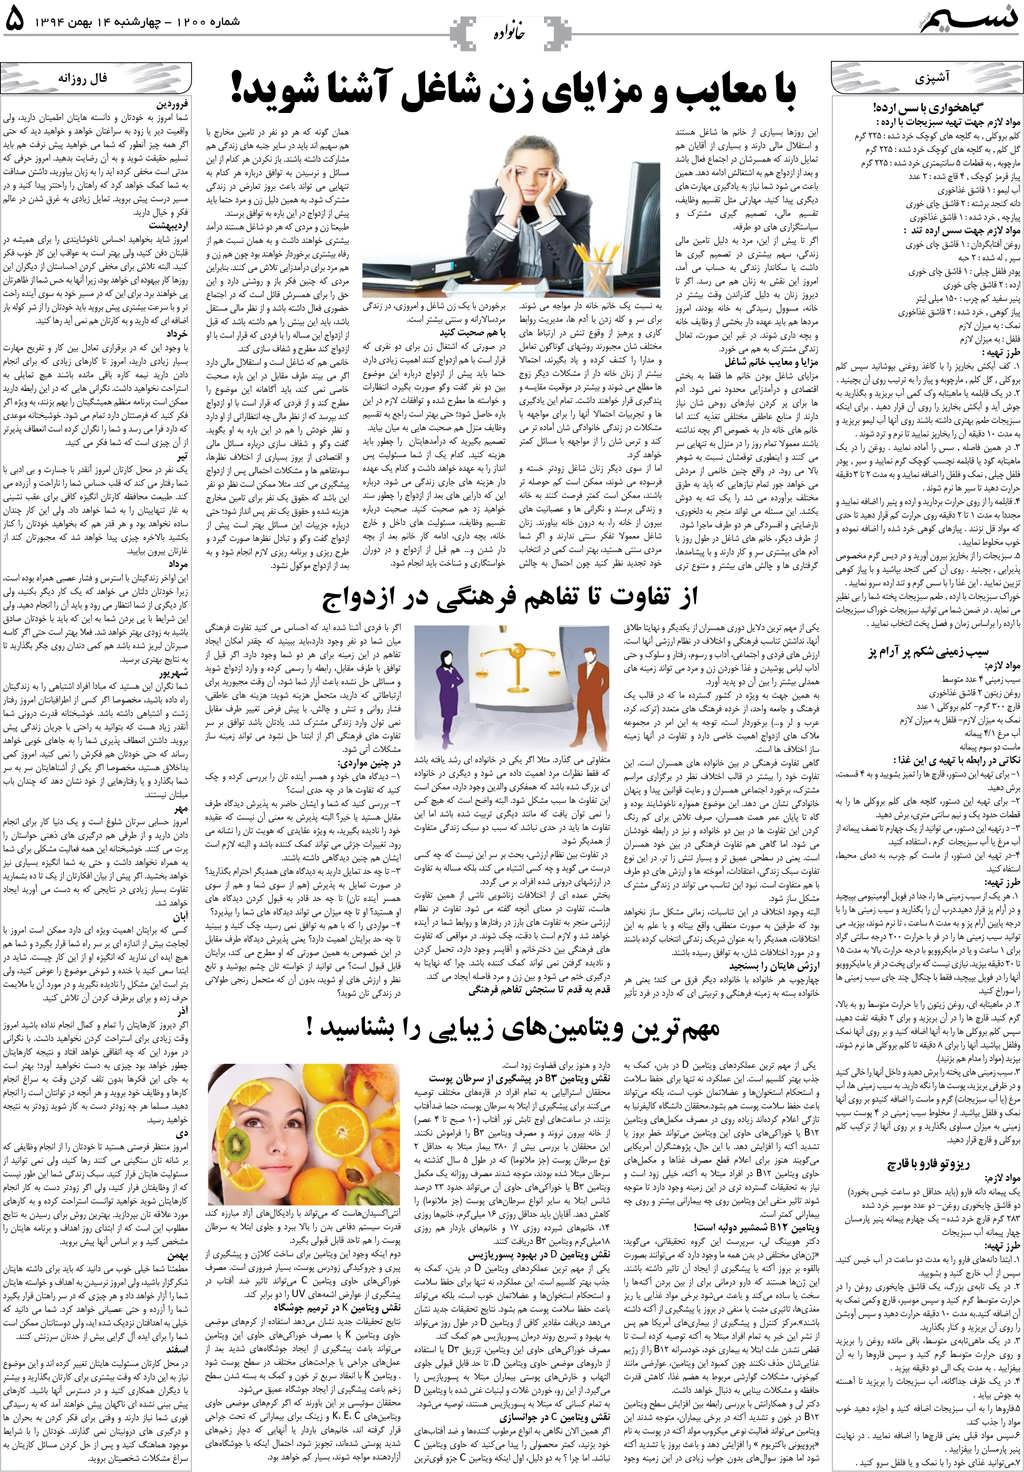 صفحه خانواده روزنامه نسیم شماره 1200